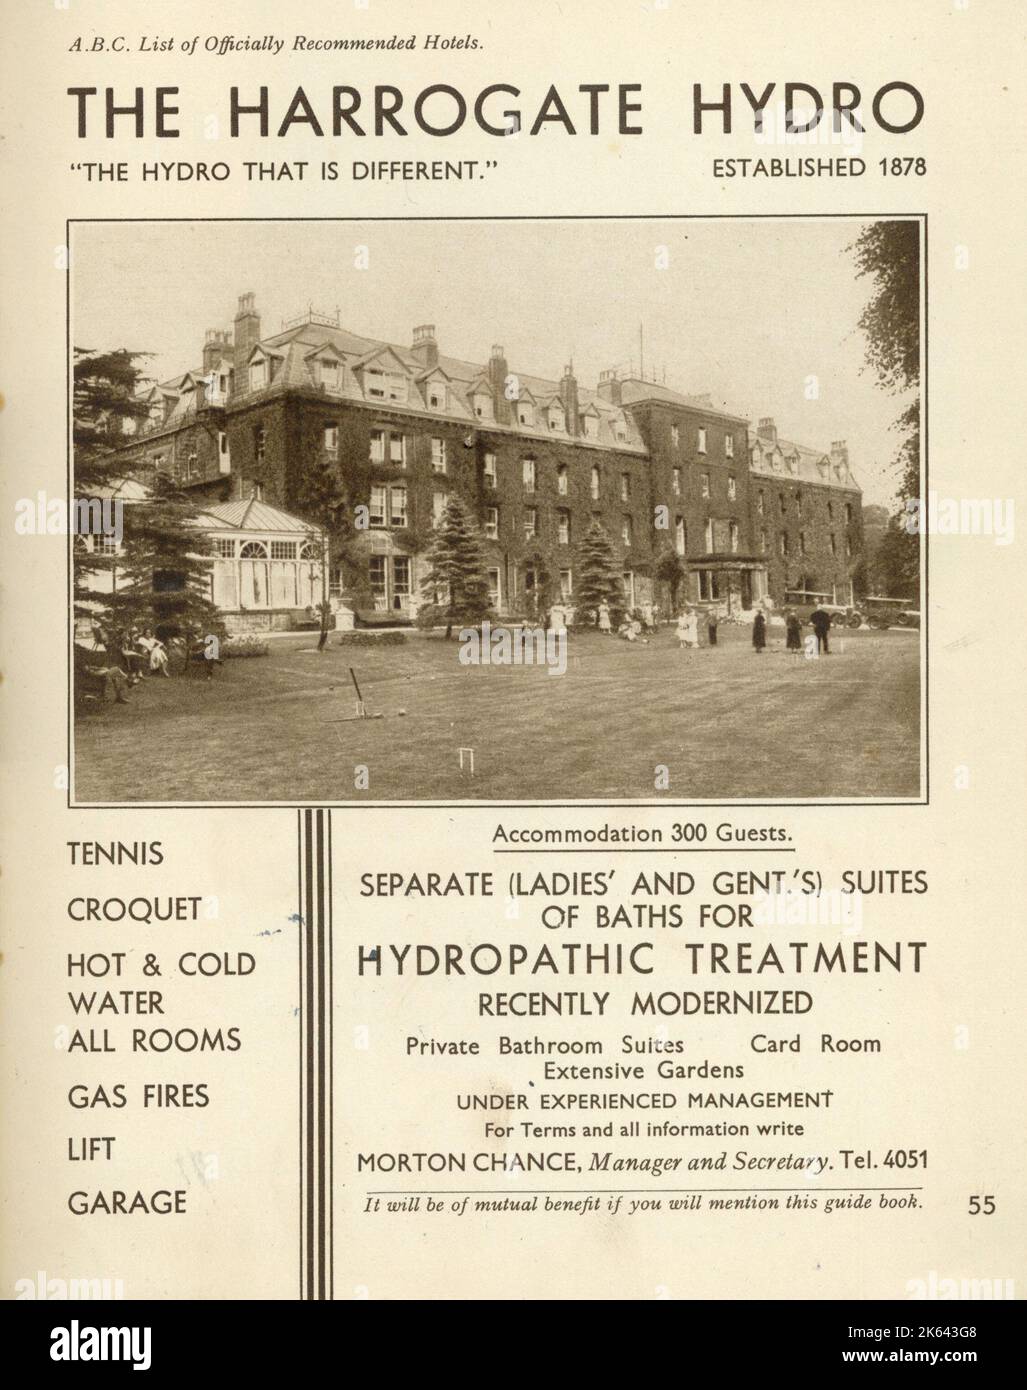 Das Harrogate Hydro, Spa und Hotel in der Yorkshire Stadt Harrogate mit Unterkunft für 300 Gäste und den neuesten Hydropathie-Behandlungen. Als die Romanautorin Agatha Christie 1926 elf Tage lang verschwand und eine landesweite Suche auslöste, entdeckte man schließlich, dass sie im Hydro wohnt. Heute ist das Hotel als Old Swan Hotel bekannt. Stockfoto